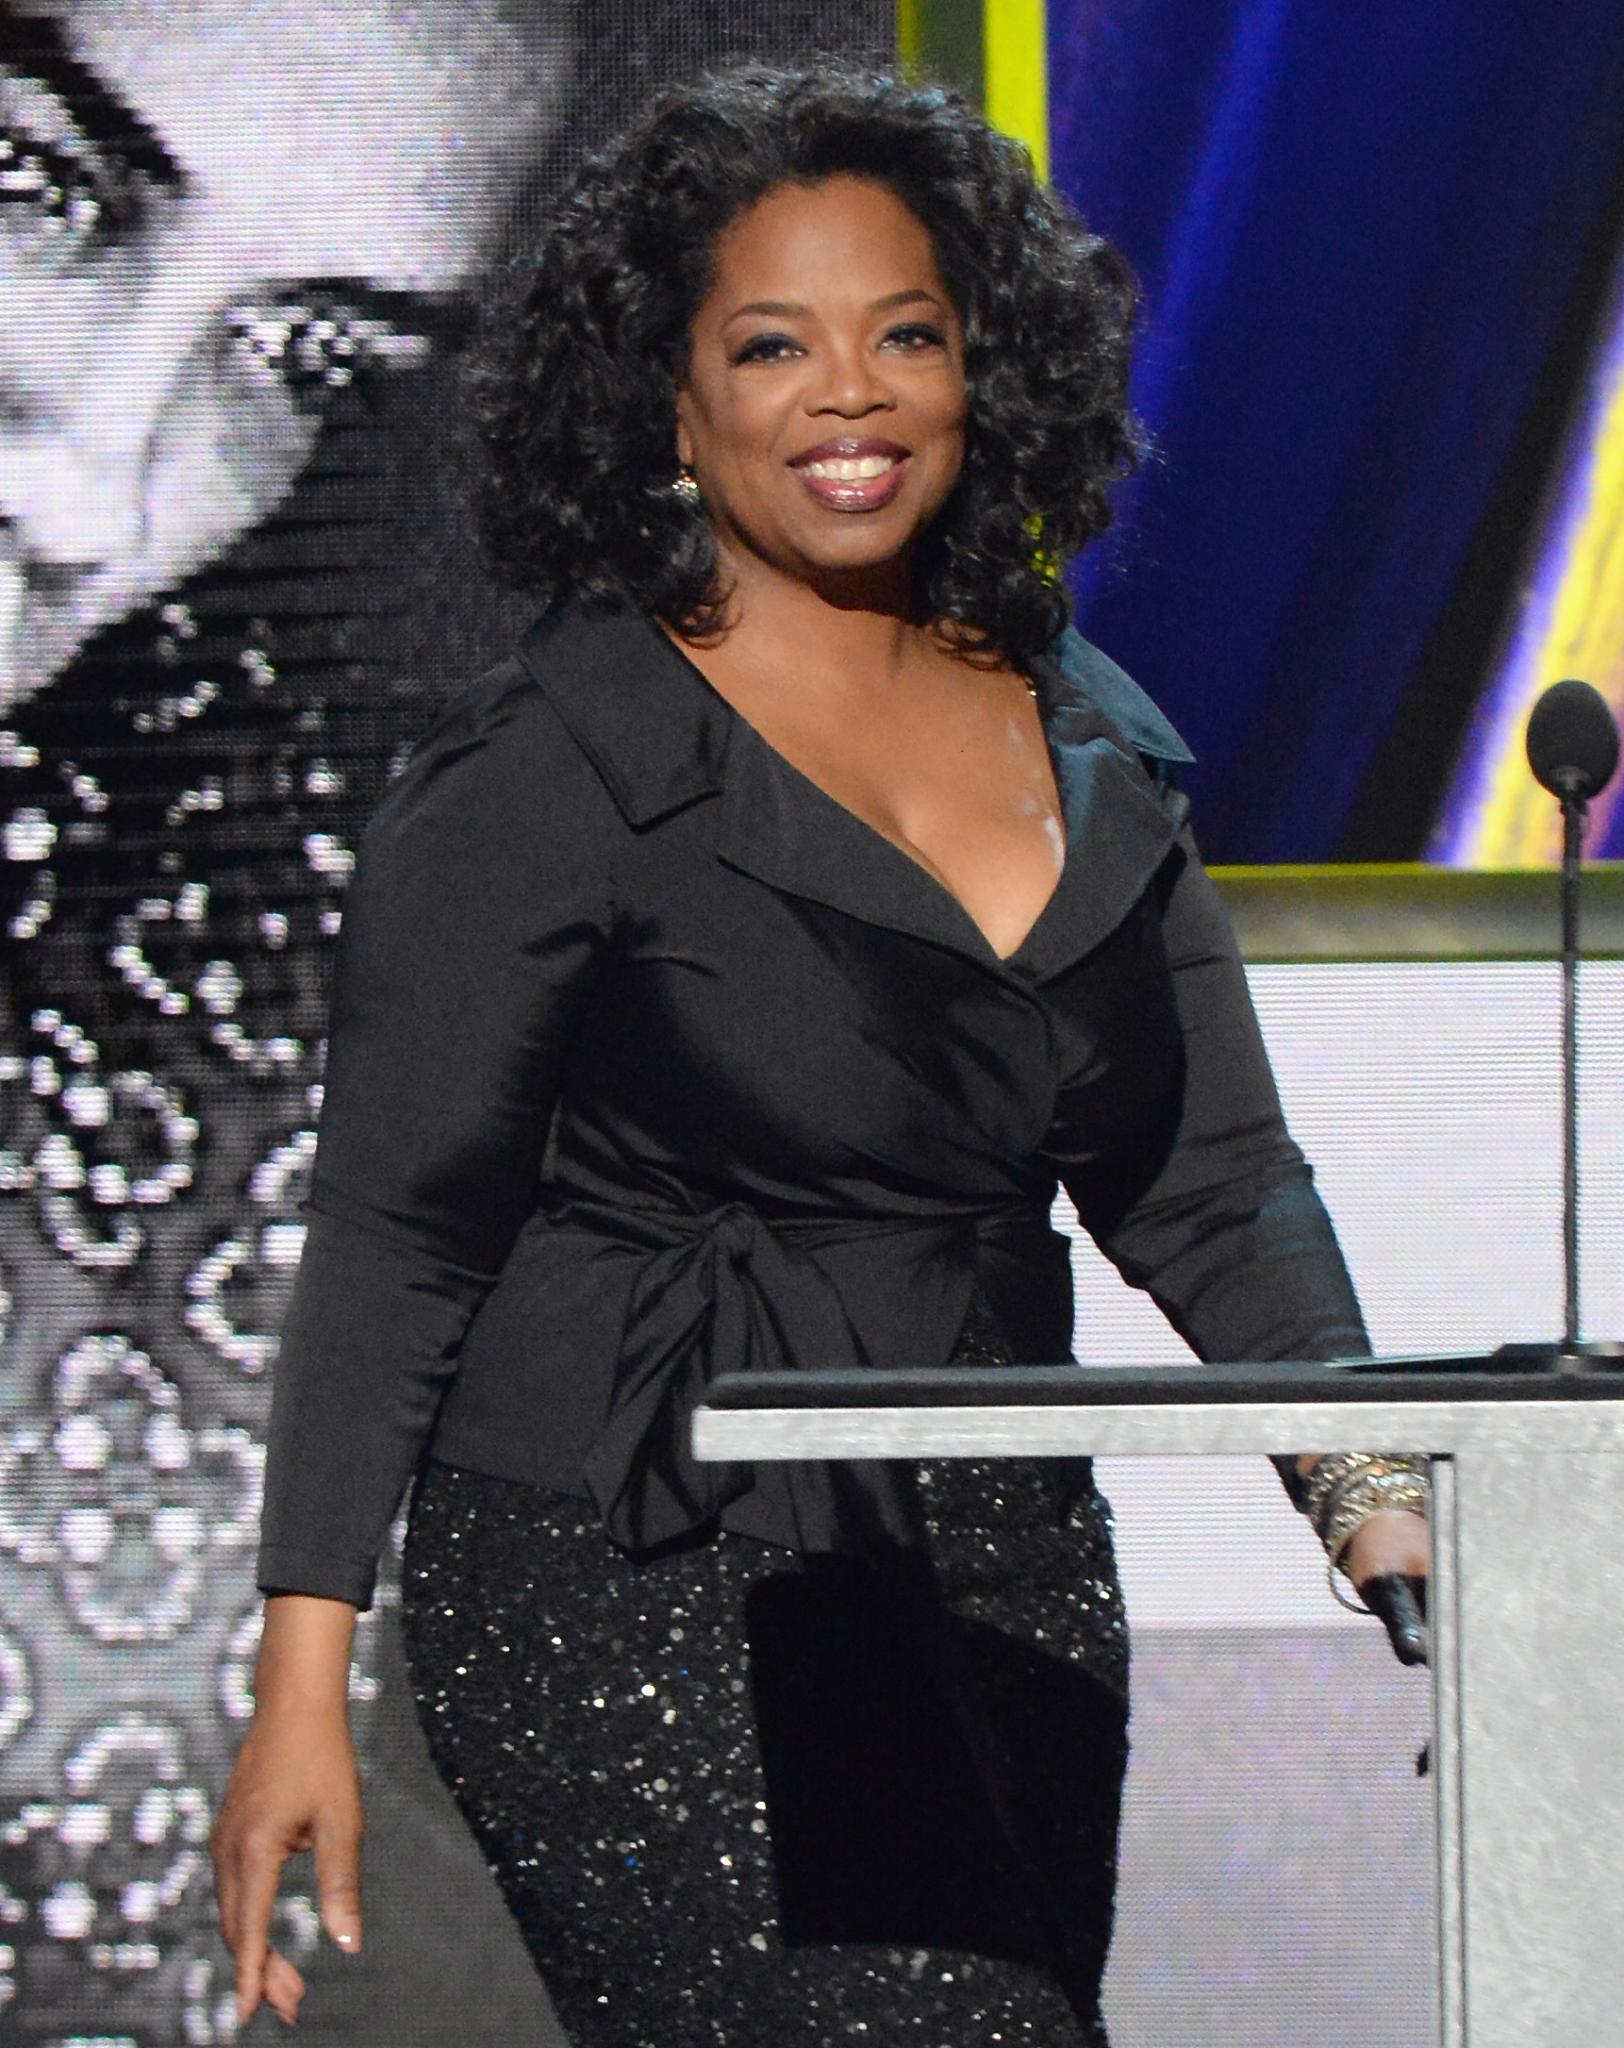 Oprah Winfrey Donates $12 Million to Smithsonian
